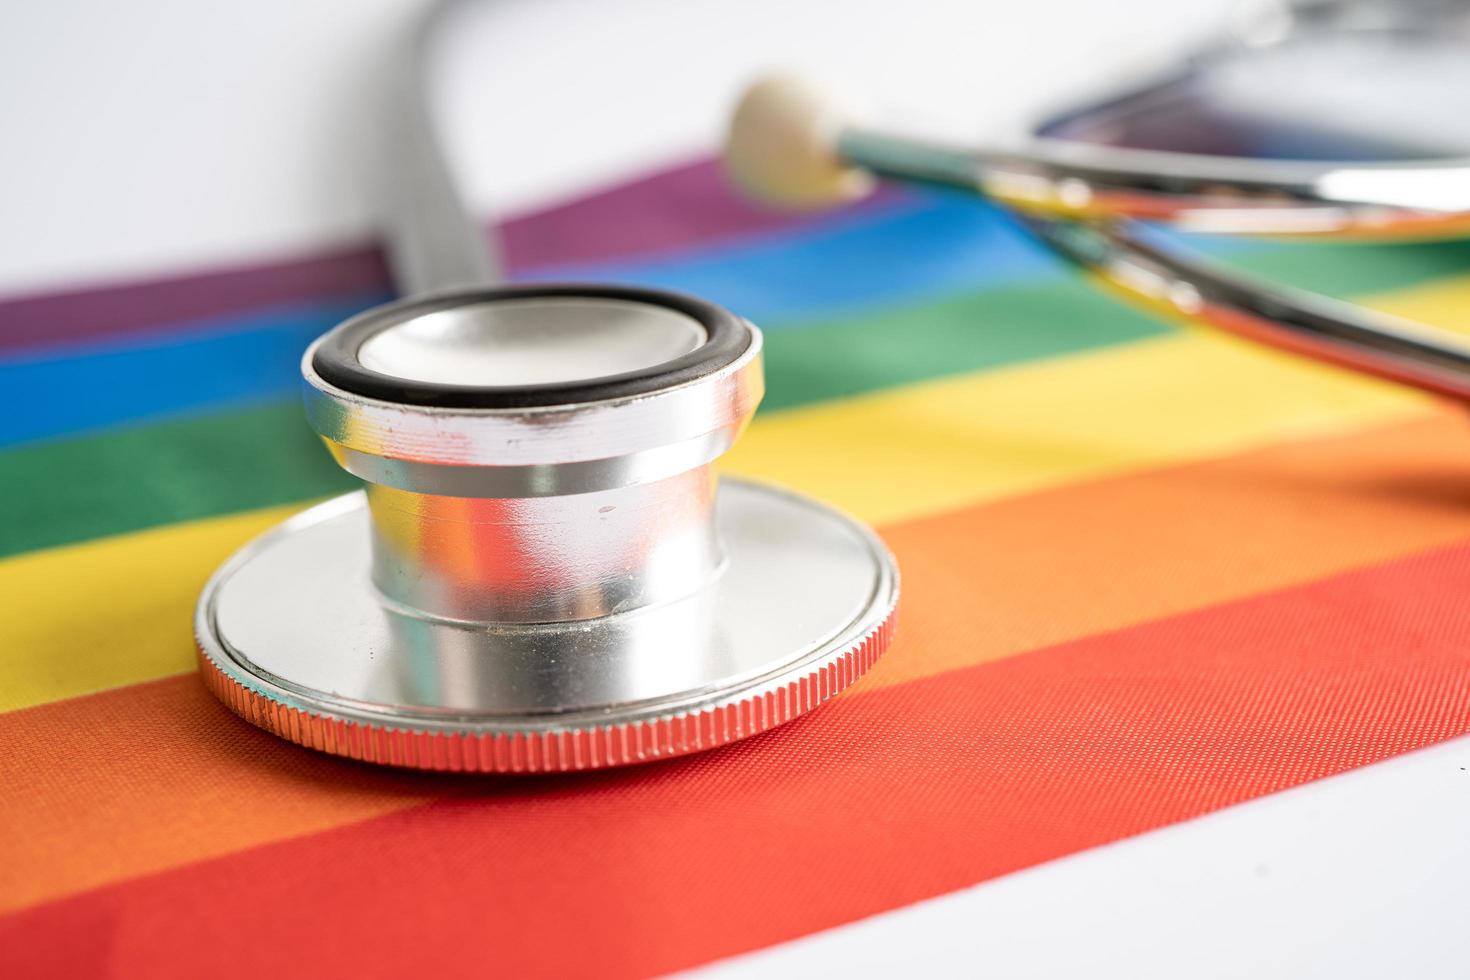 stetoscopio nero su sfondo bandiera arcobaleno, simbolo del mese dell'orgoglio lgbt celebra annuale a giugno sociale, simbolo di gay, lesbiche, bisessuali, transgender, diritti umani e pace. foto